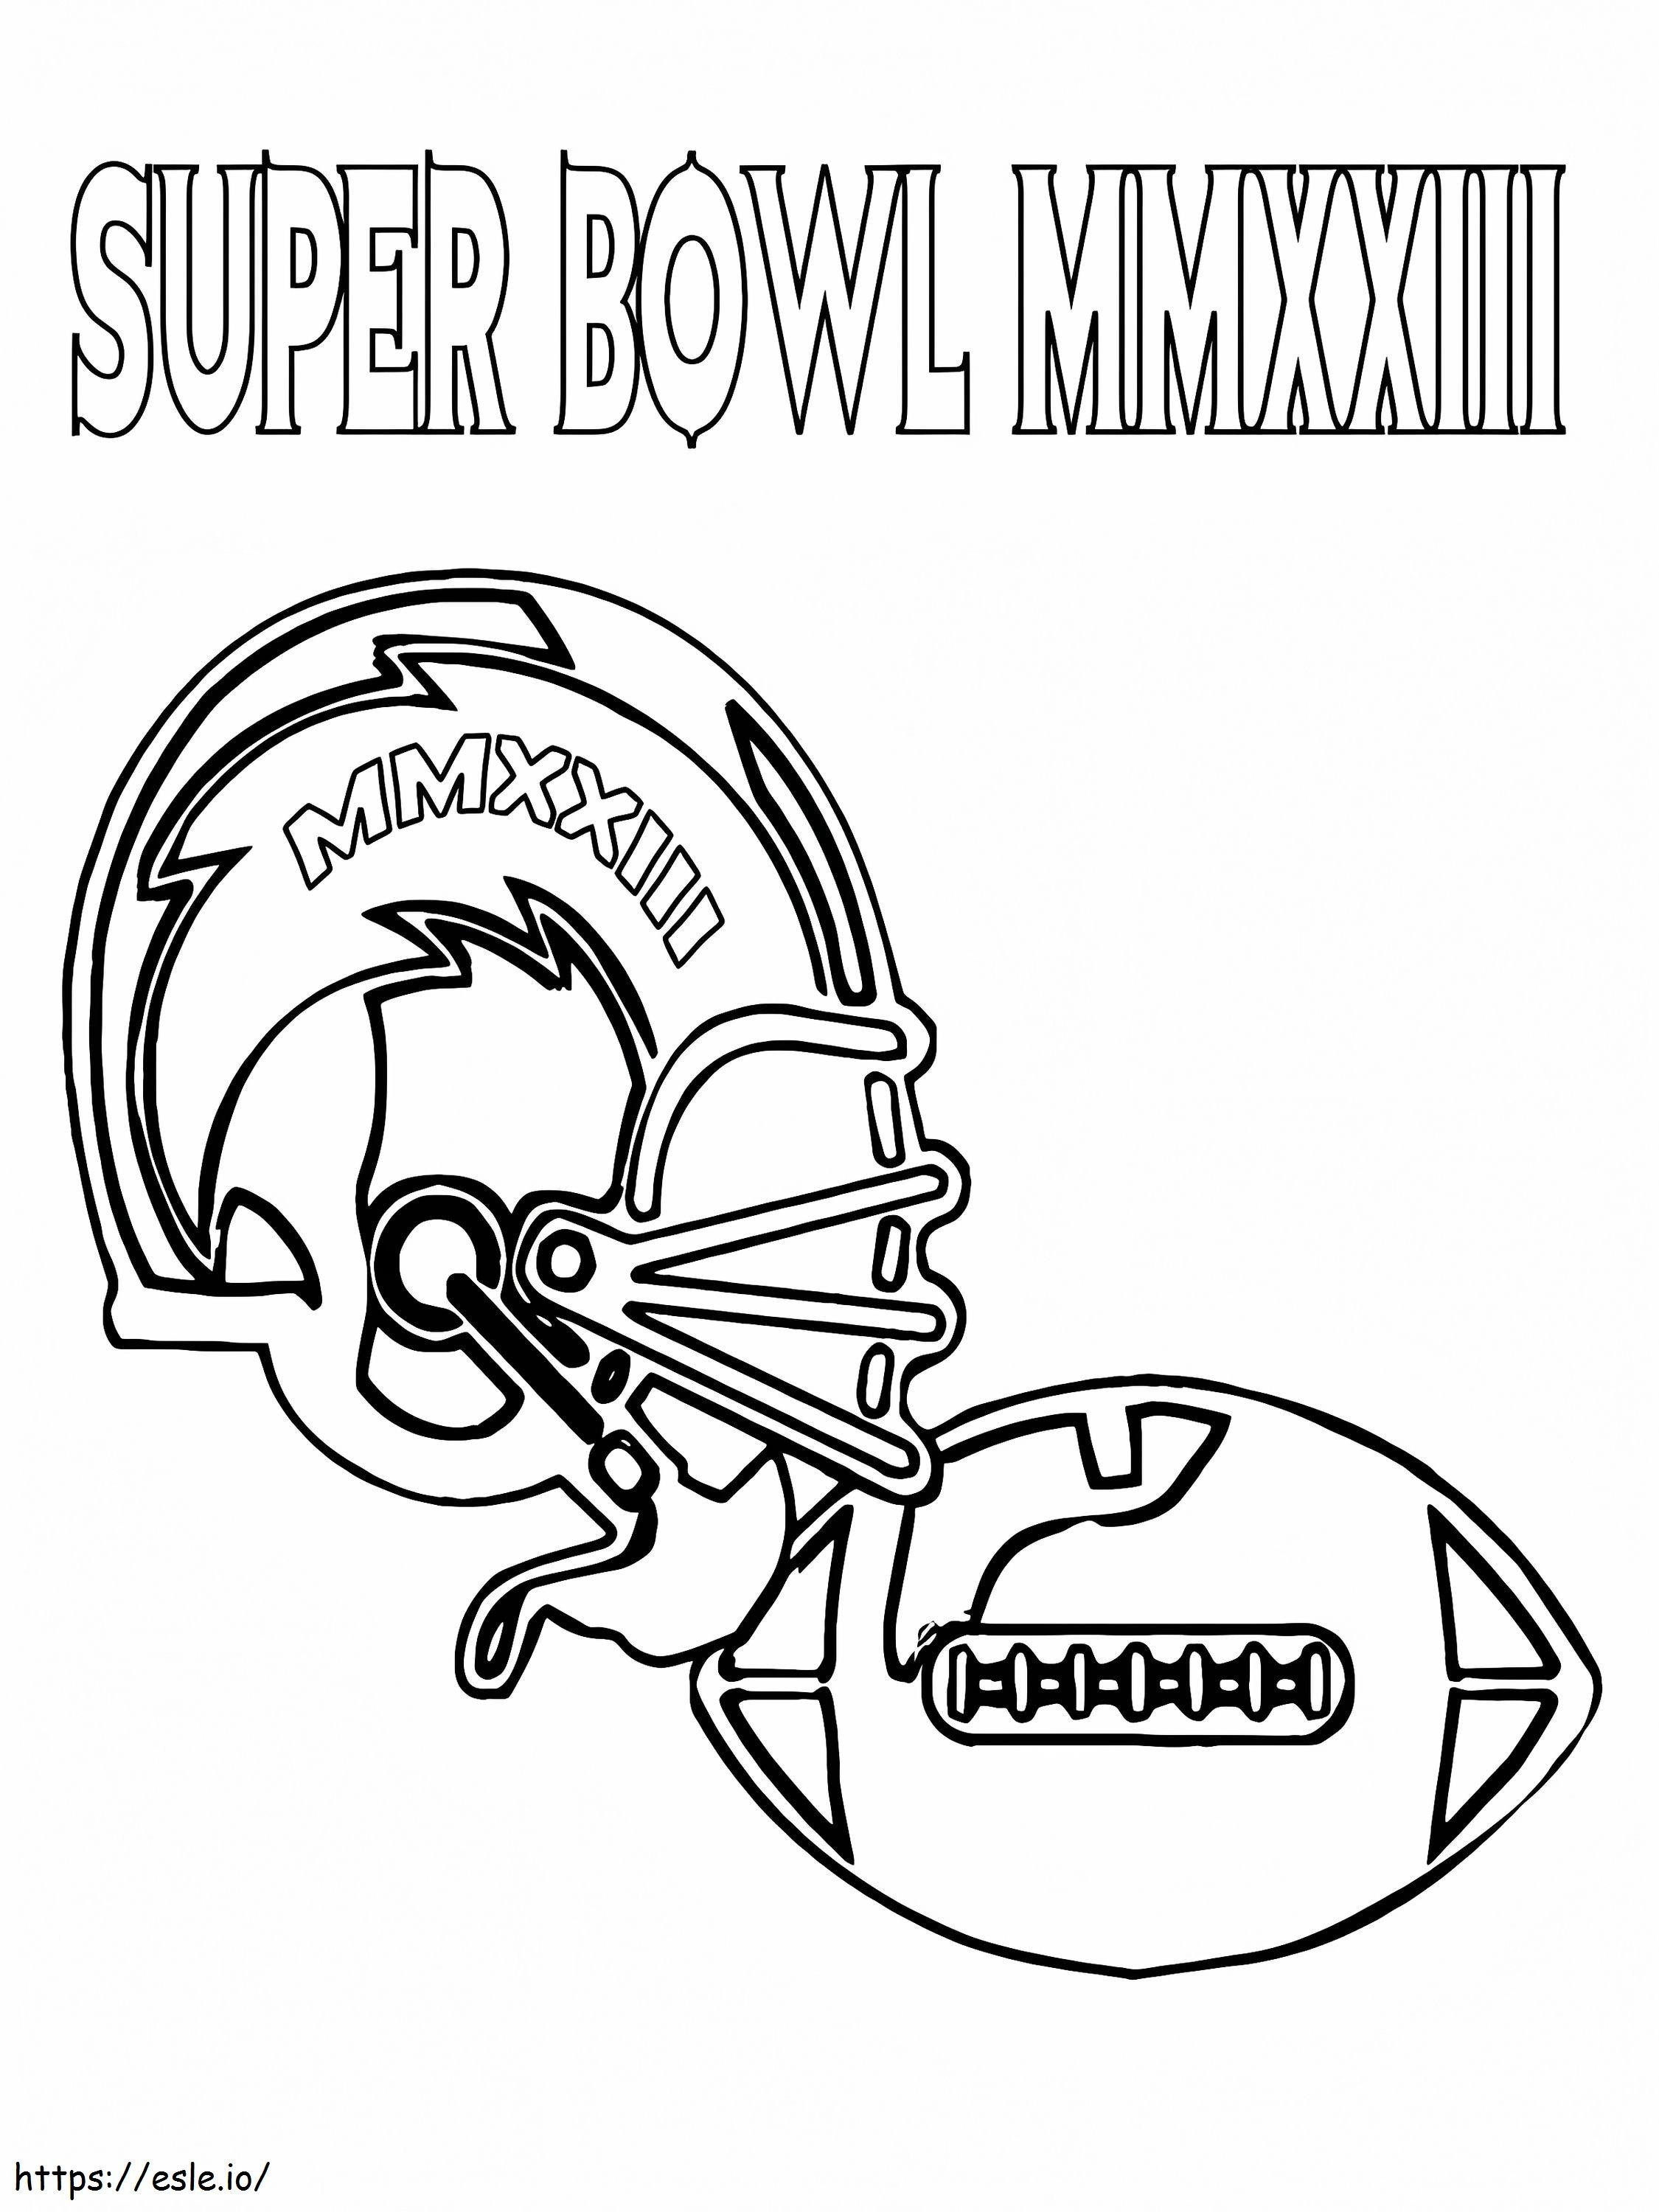 Capacete e bola de futebol do Super Bowl para colorir